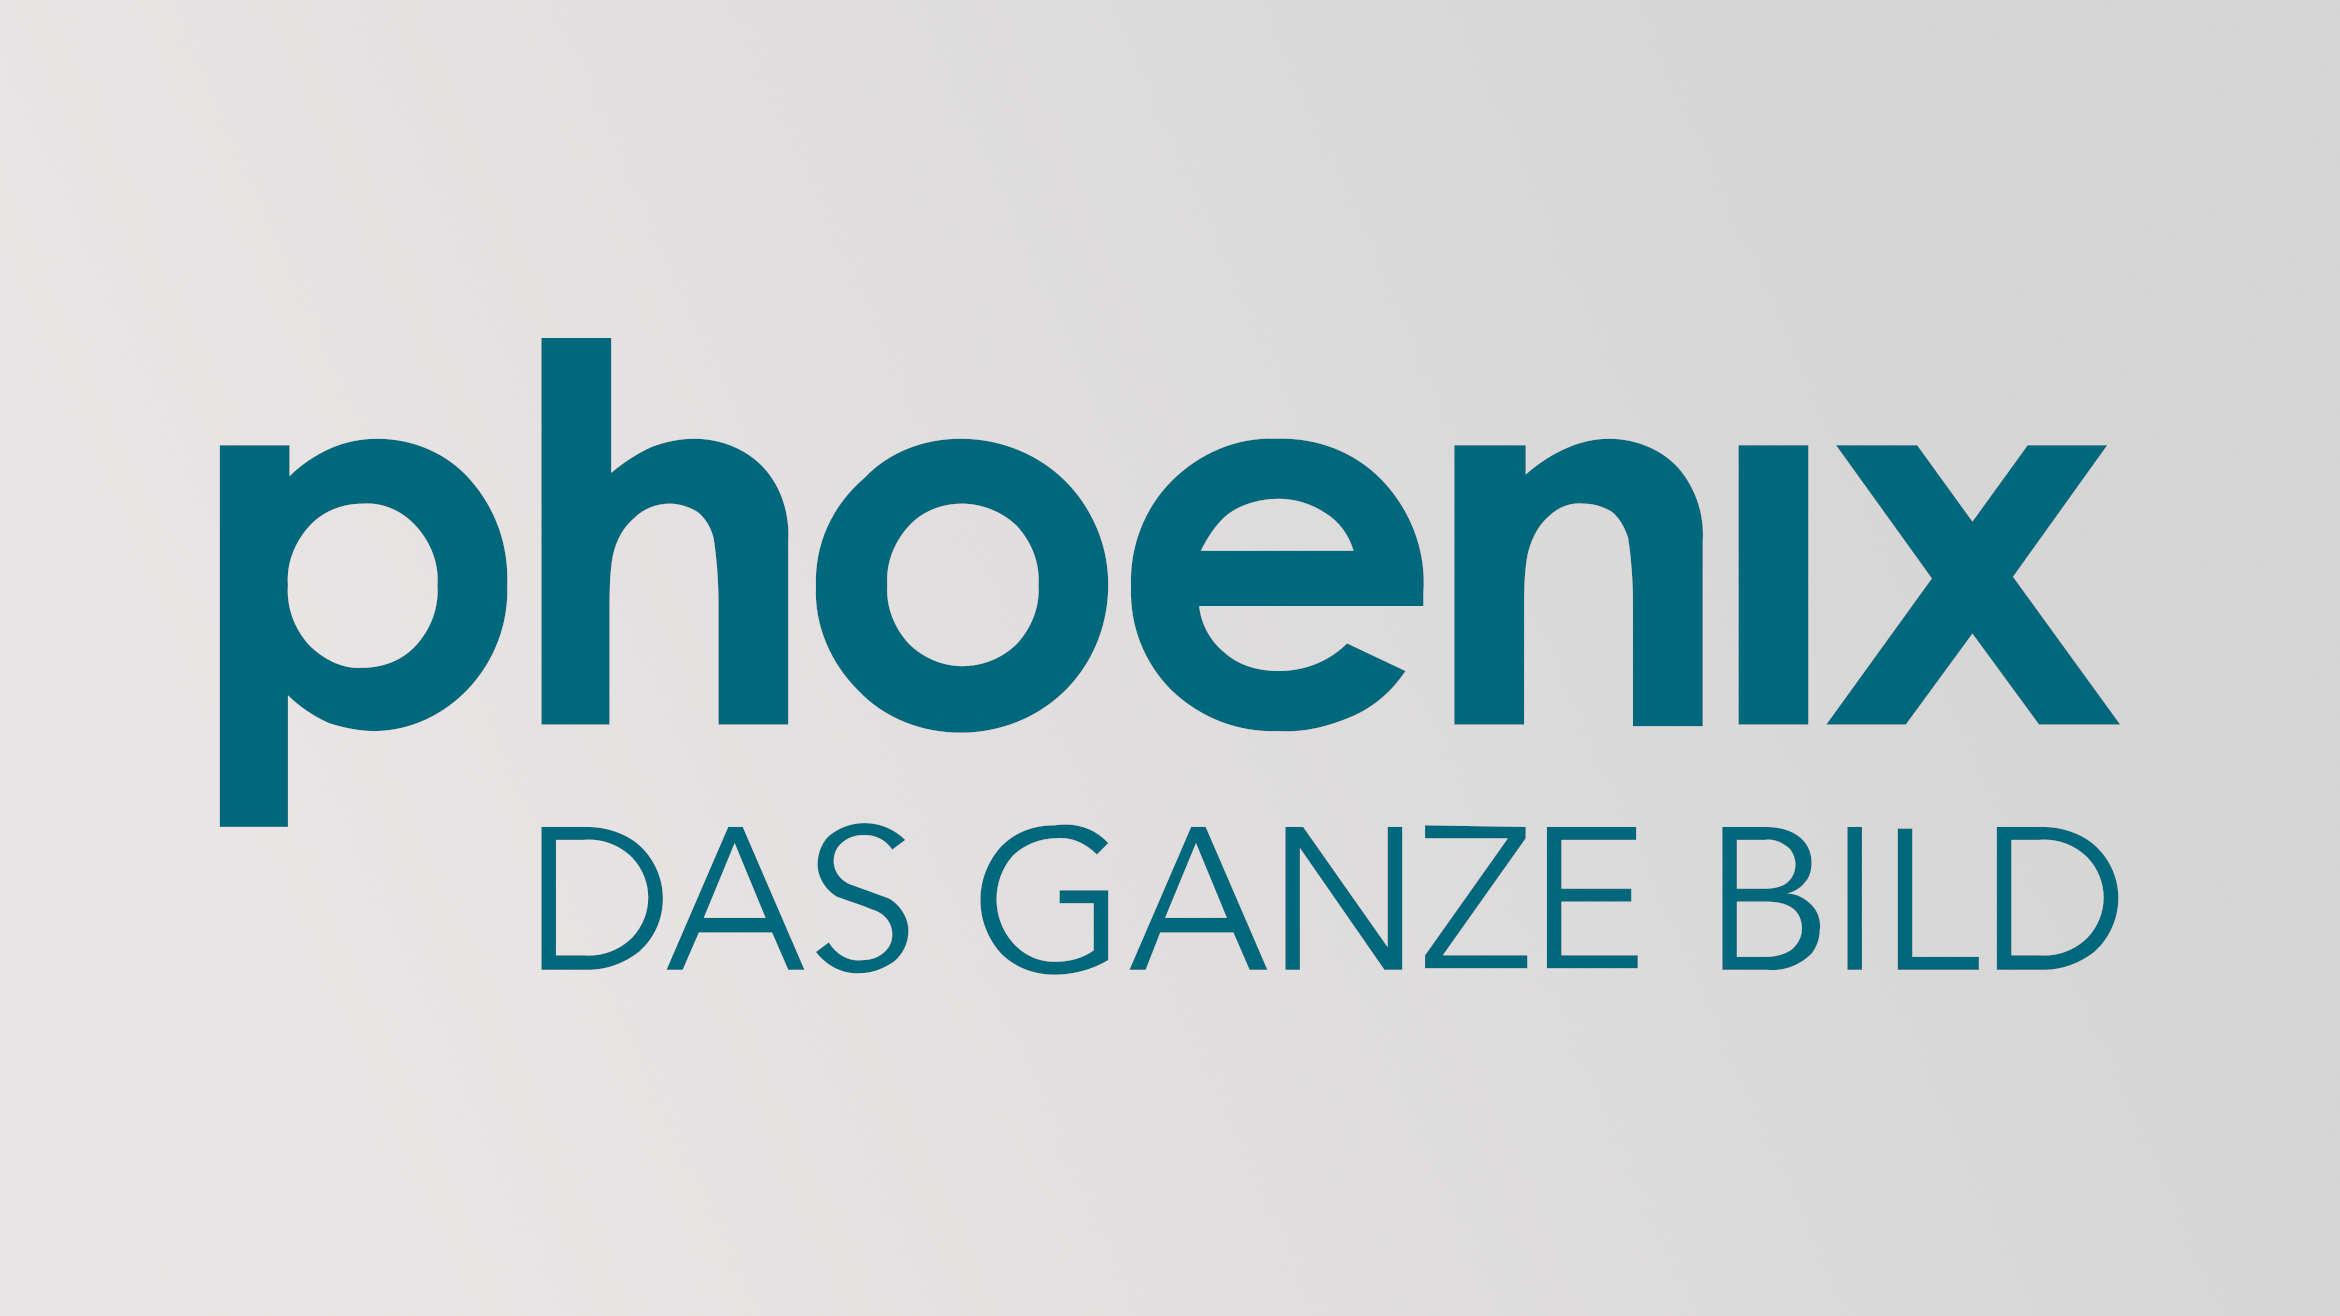 Der Fernsehsender Phoenix wurde am 7. April 1997 gegründet -